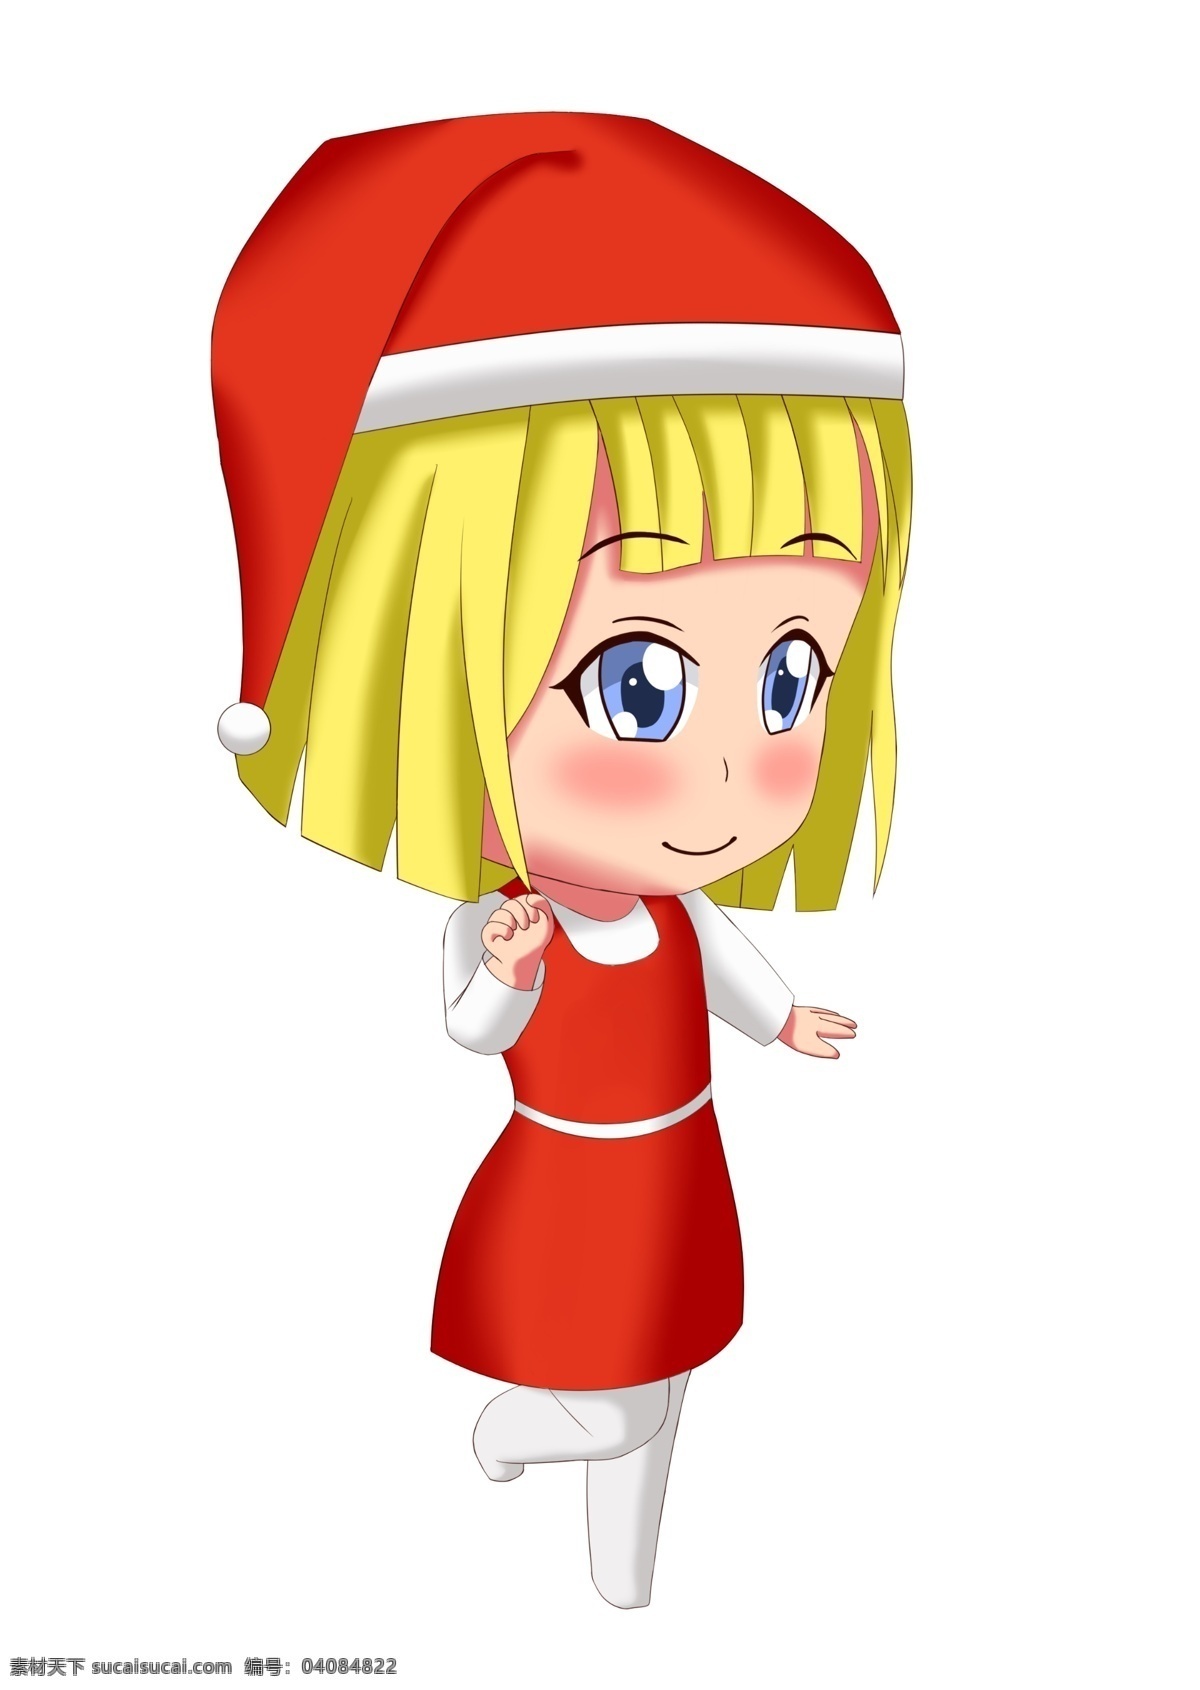 q 版 卡通 圣诞 少女 套 图 圣诞节 可爱 红色 女孩 圣诞帽 圣诞夜 大眼睛 日系 手绘 免抠 q版